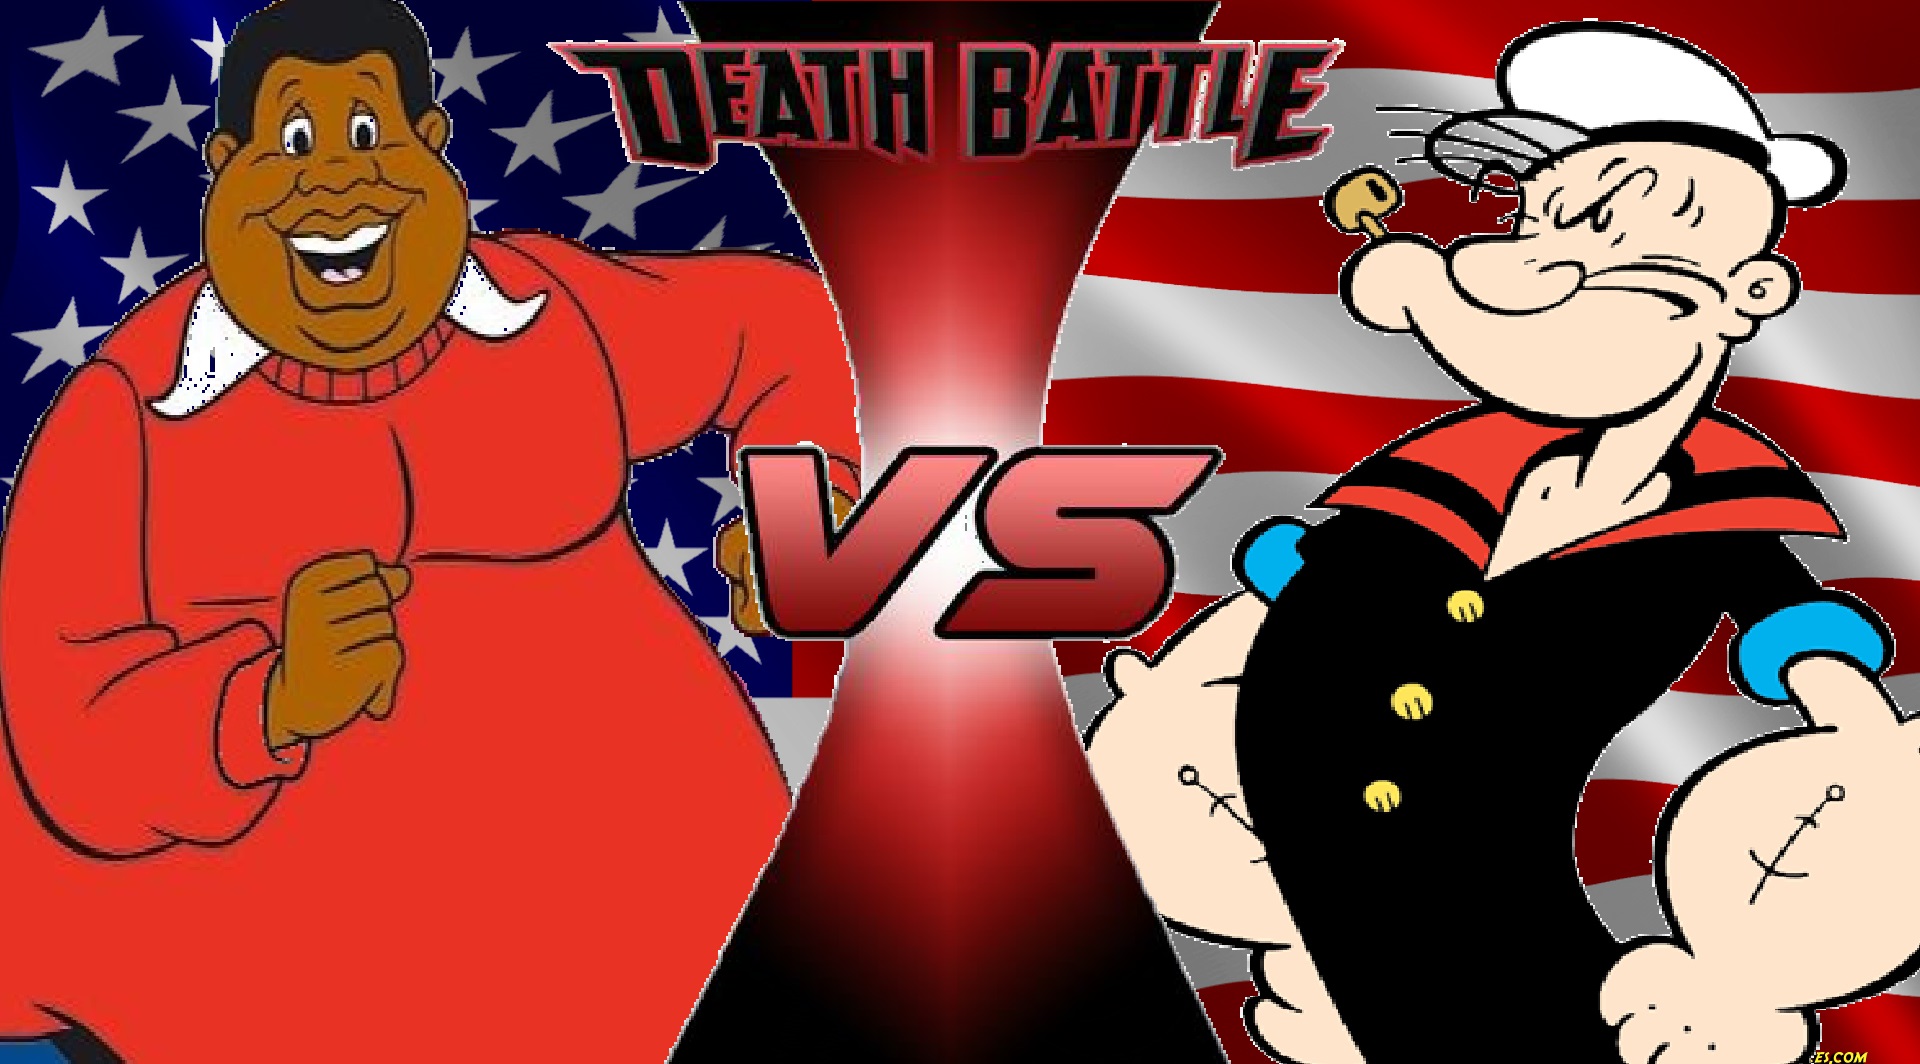 Image - Fat Albert vs Popeye.jpg | DEATH BATTLE Wiki | FANDOM ...